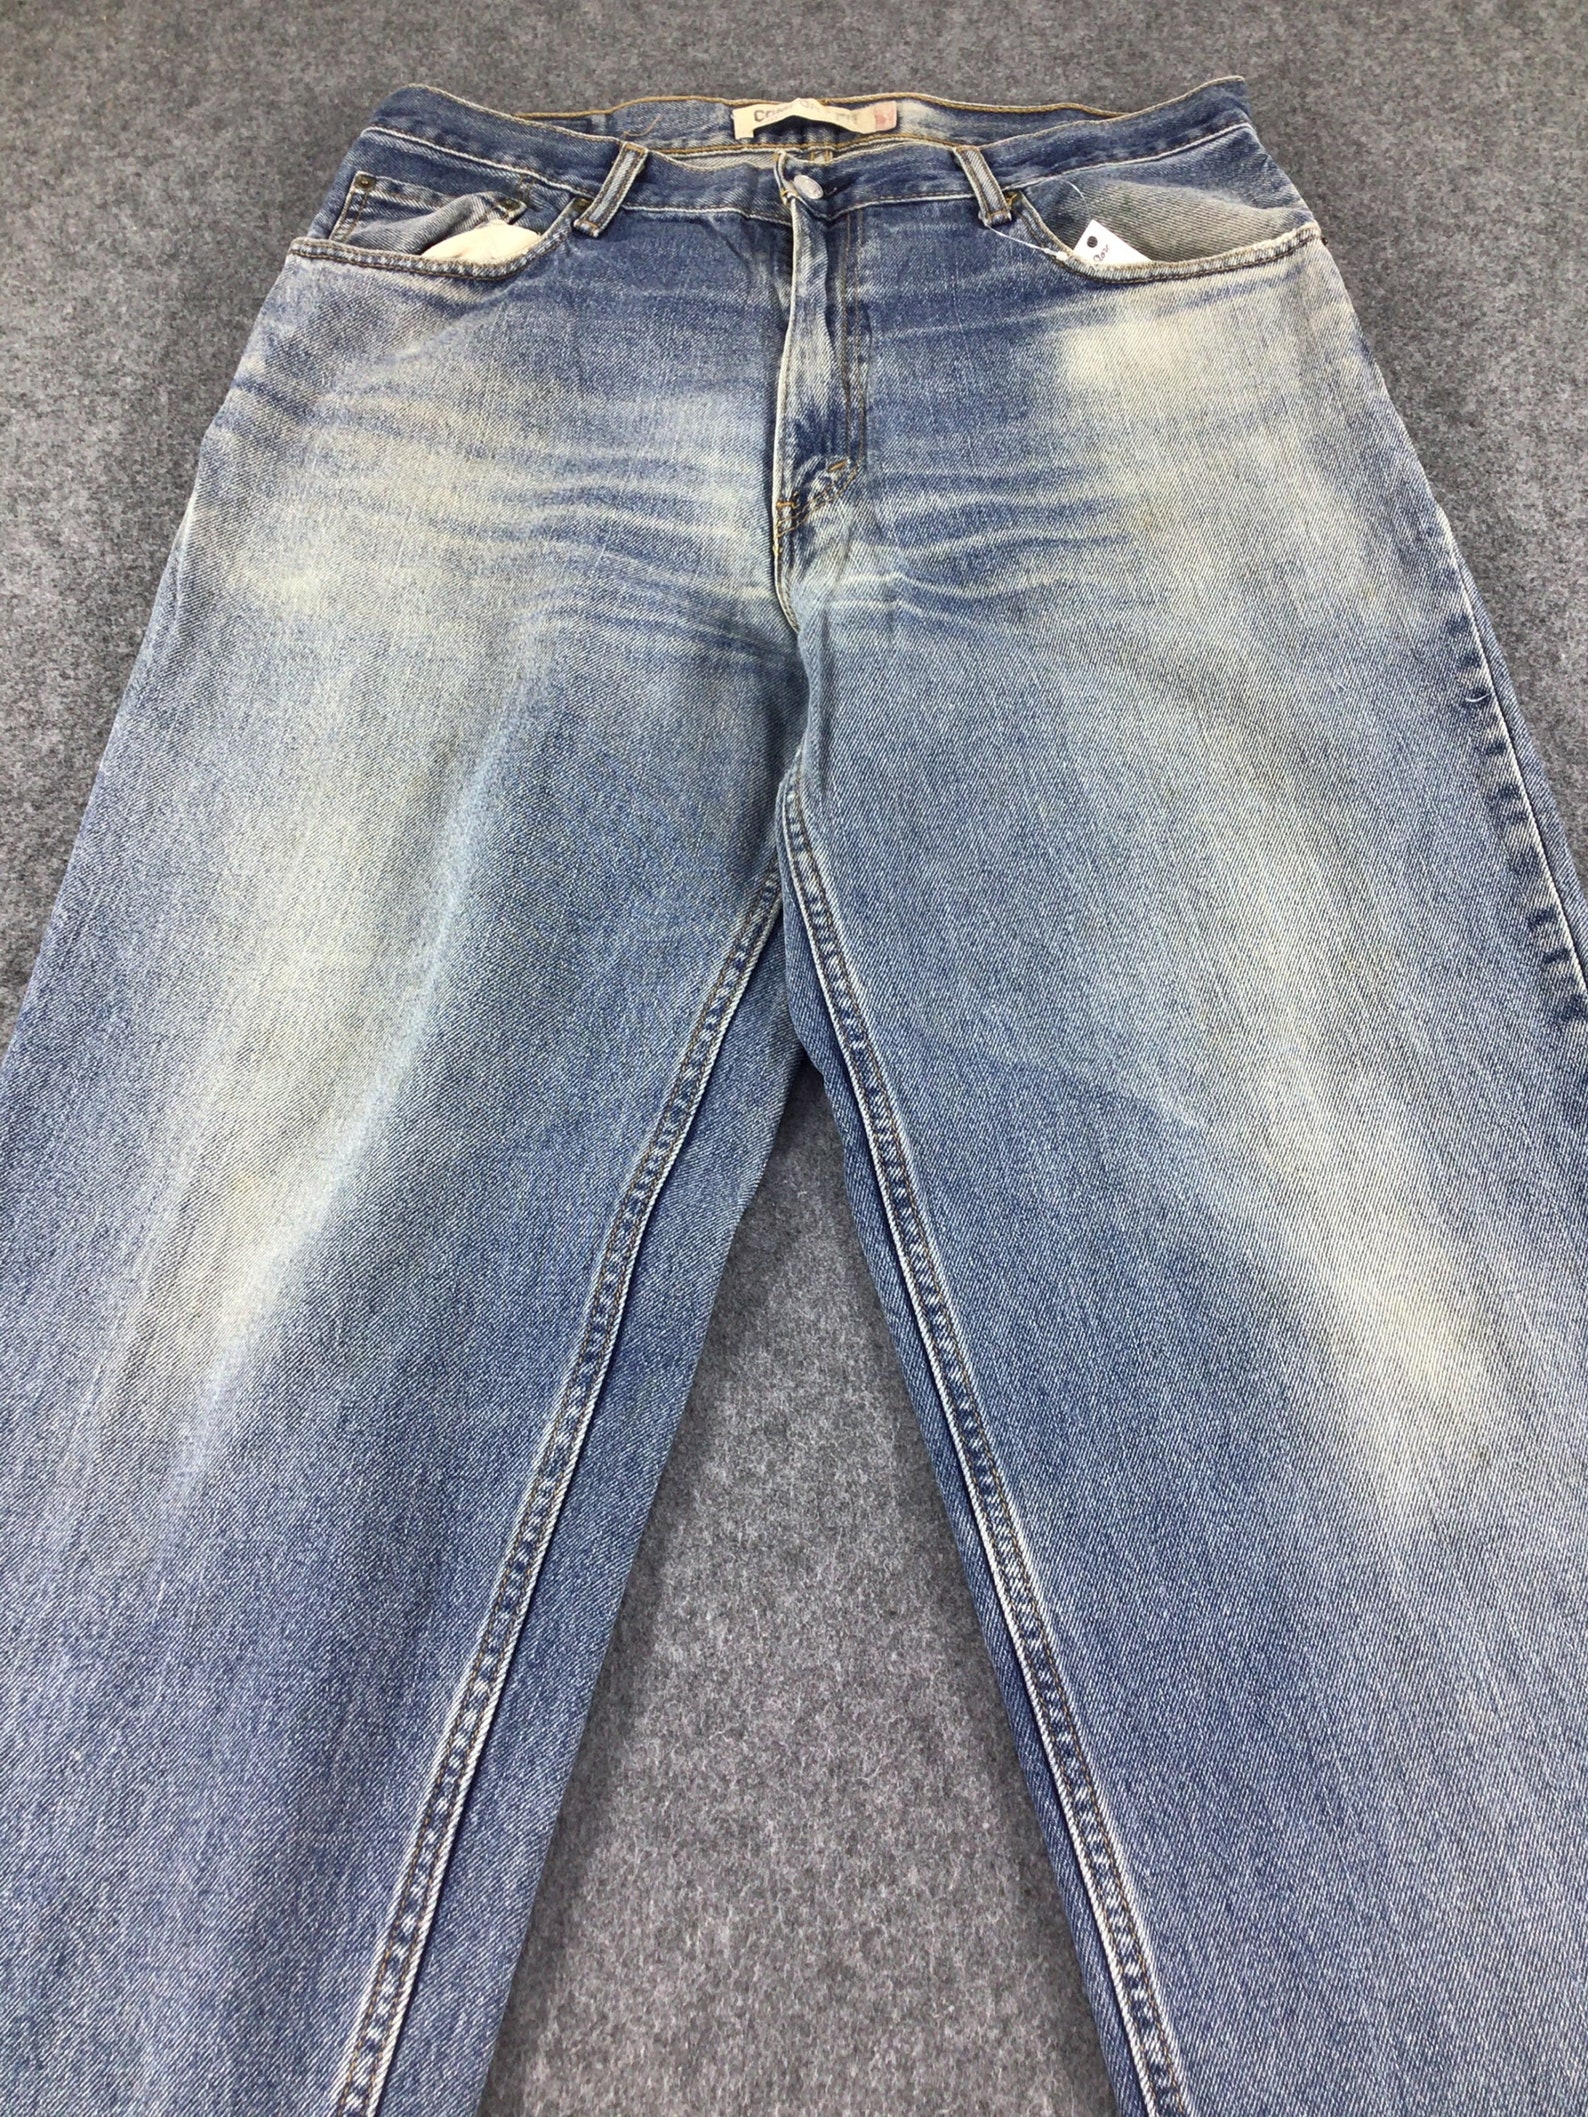 Vintage Levis Levi 560 Jeans Faded Blue Levis Denim High - Etsy